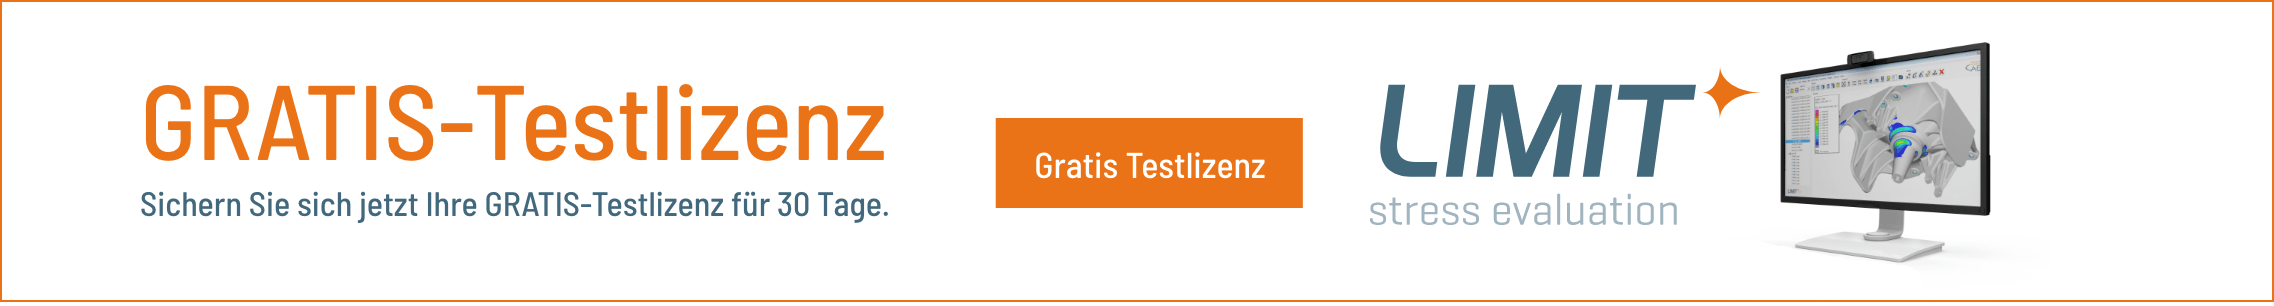 Banner Gratis-Testlizenz quer